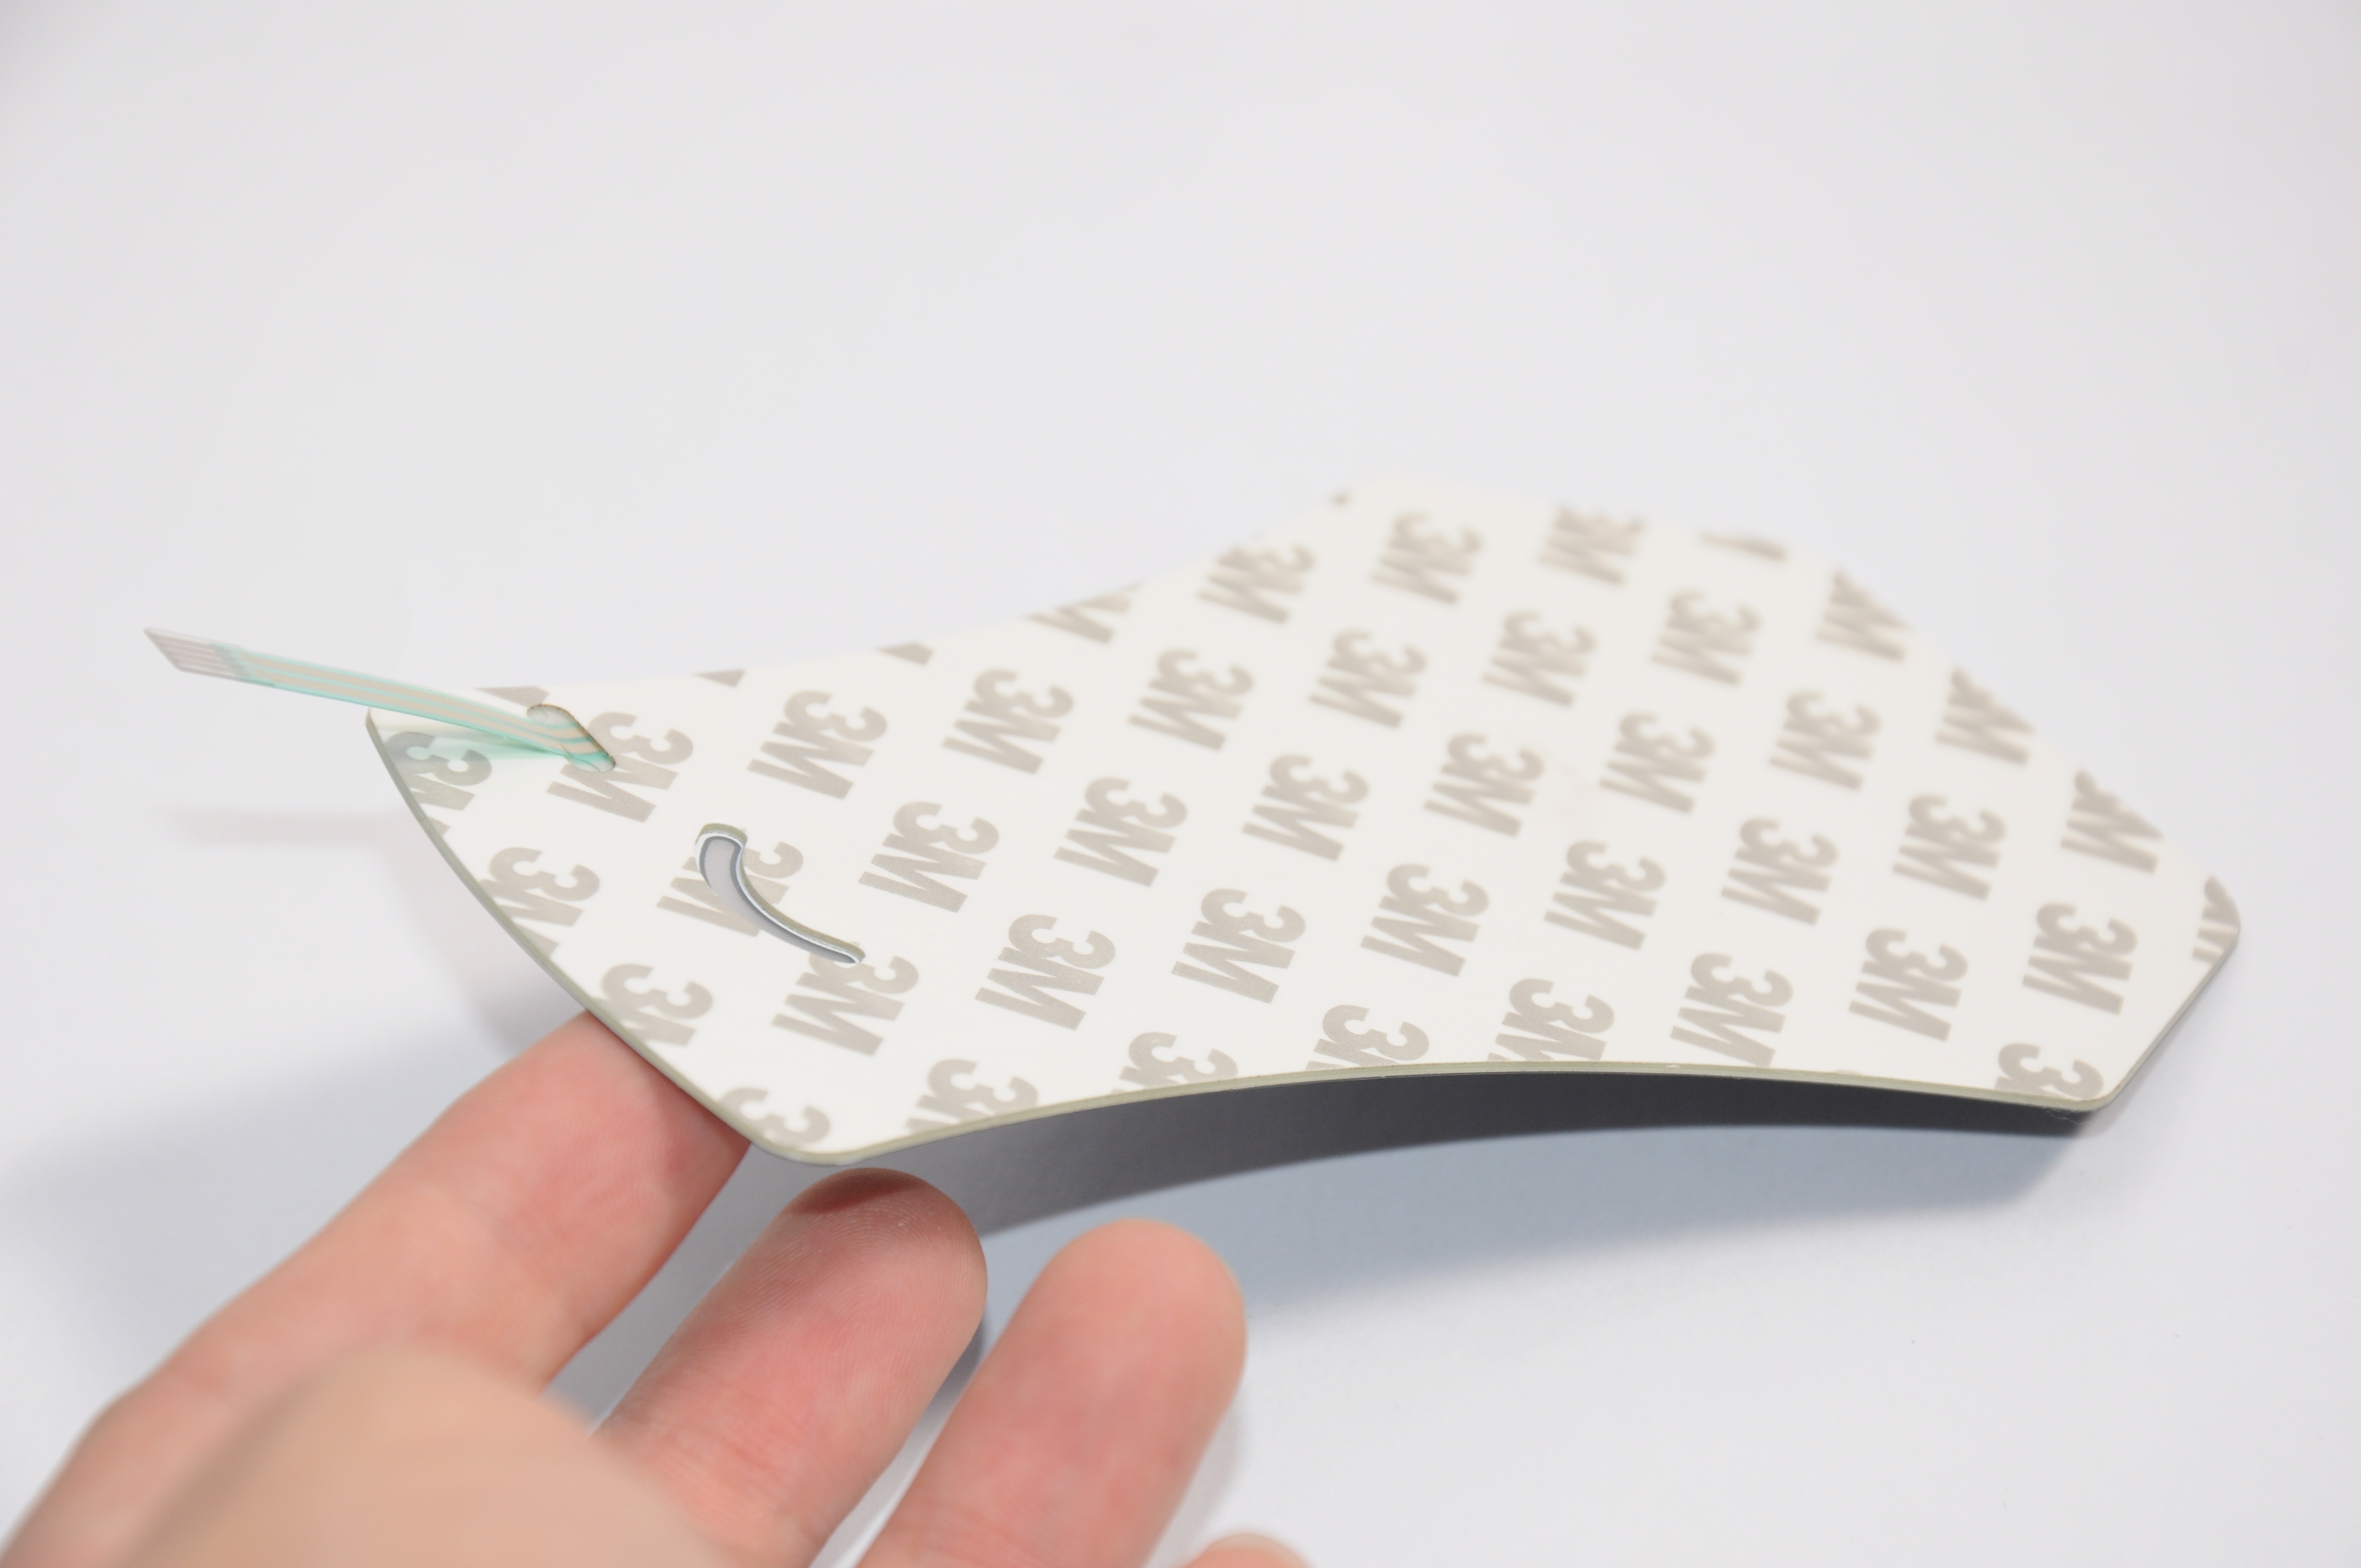 fpc薄膜开关-医疗薄膜面板-导电薄膜面板印刷